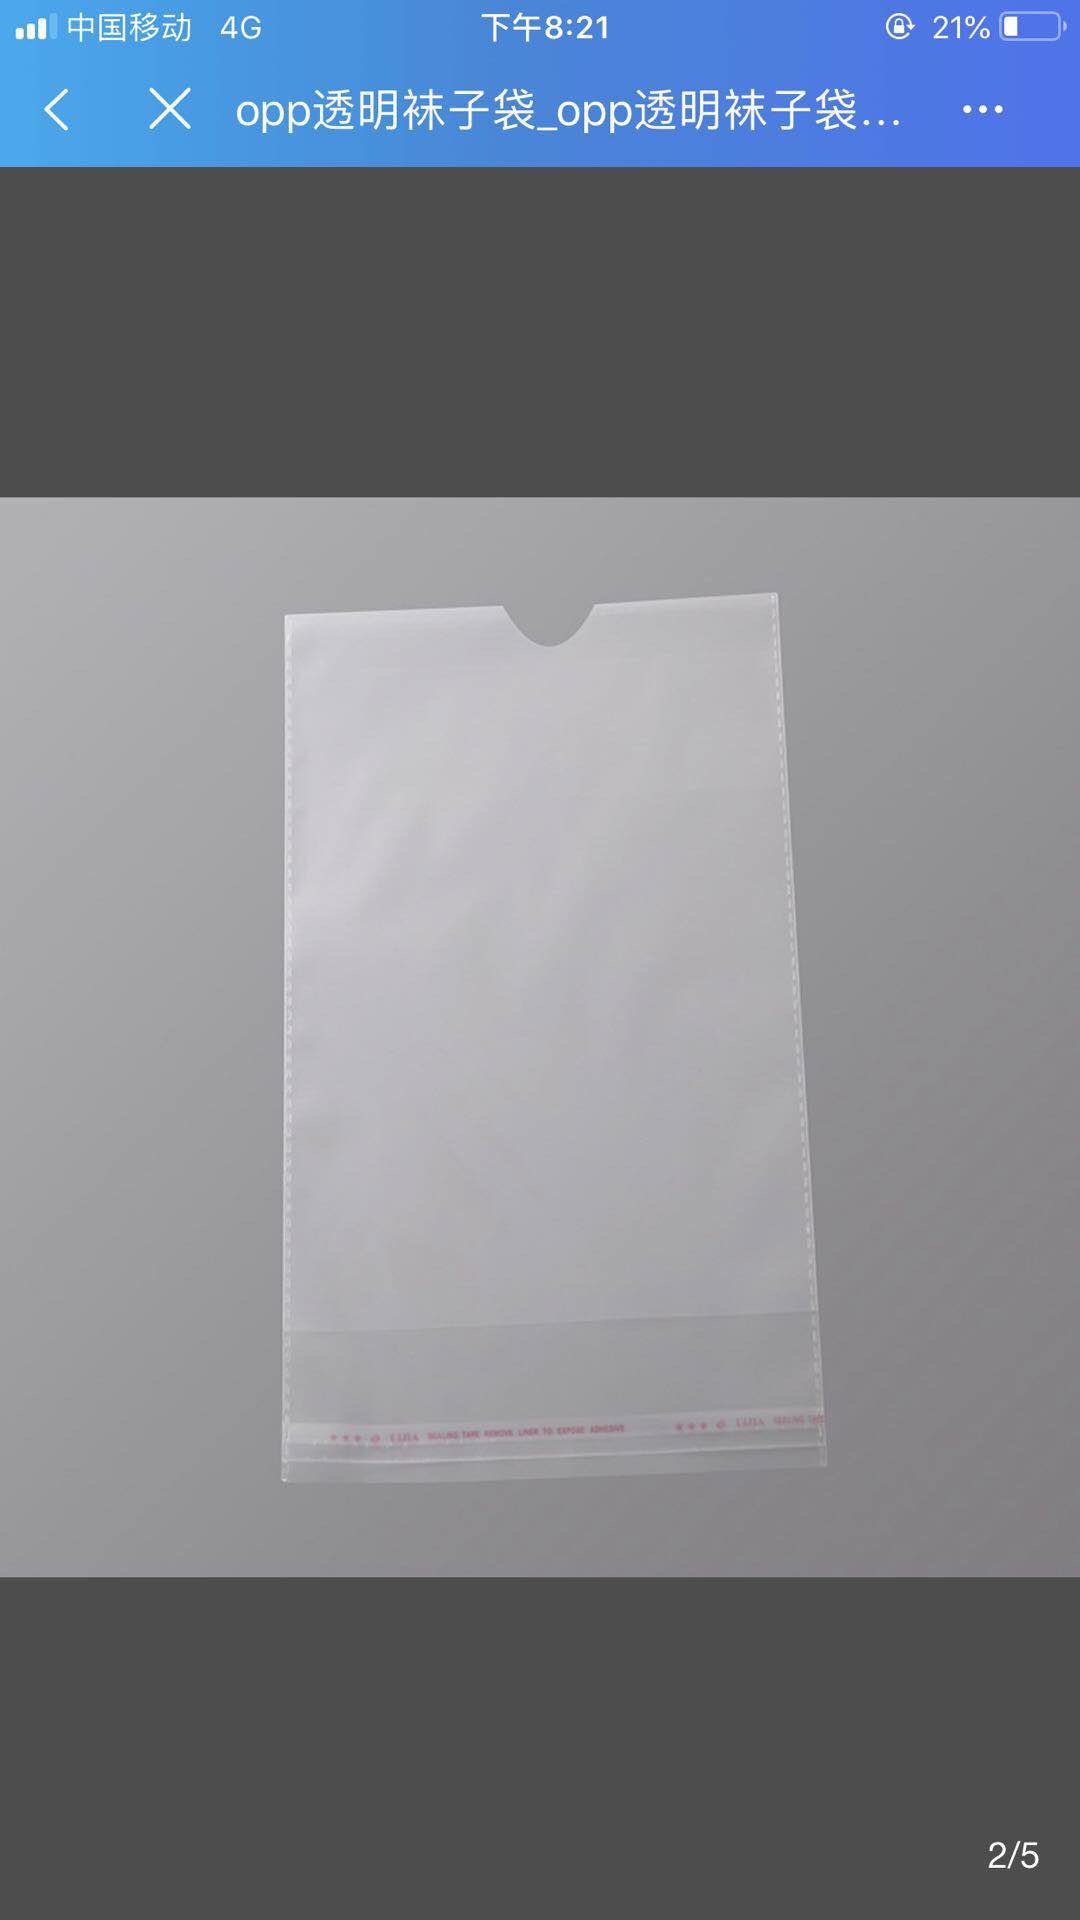 塑料袋包装的、透明袋、服装袋饰品袋产品图